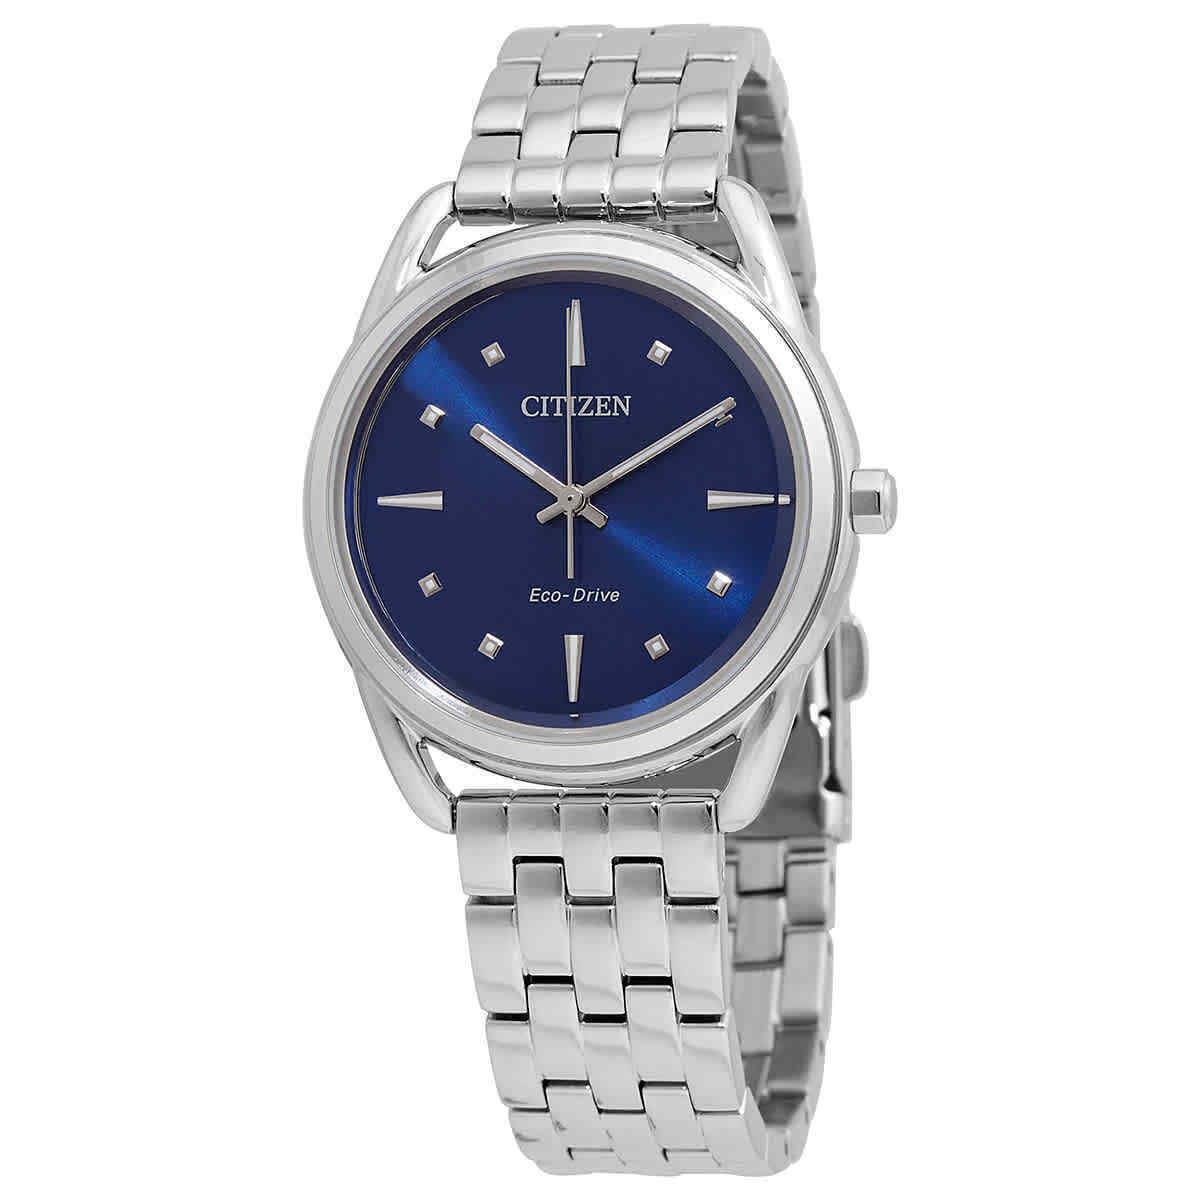 Citizen Ladies Eco-drive Dress Classics Blue Dial Watch - FE7090-55L - Blue Dial